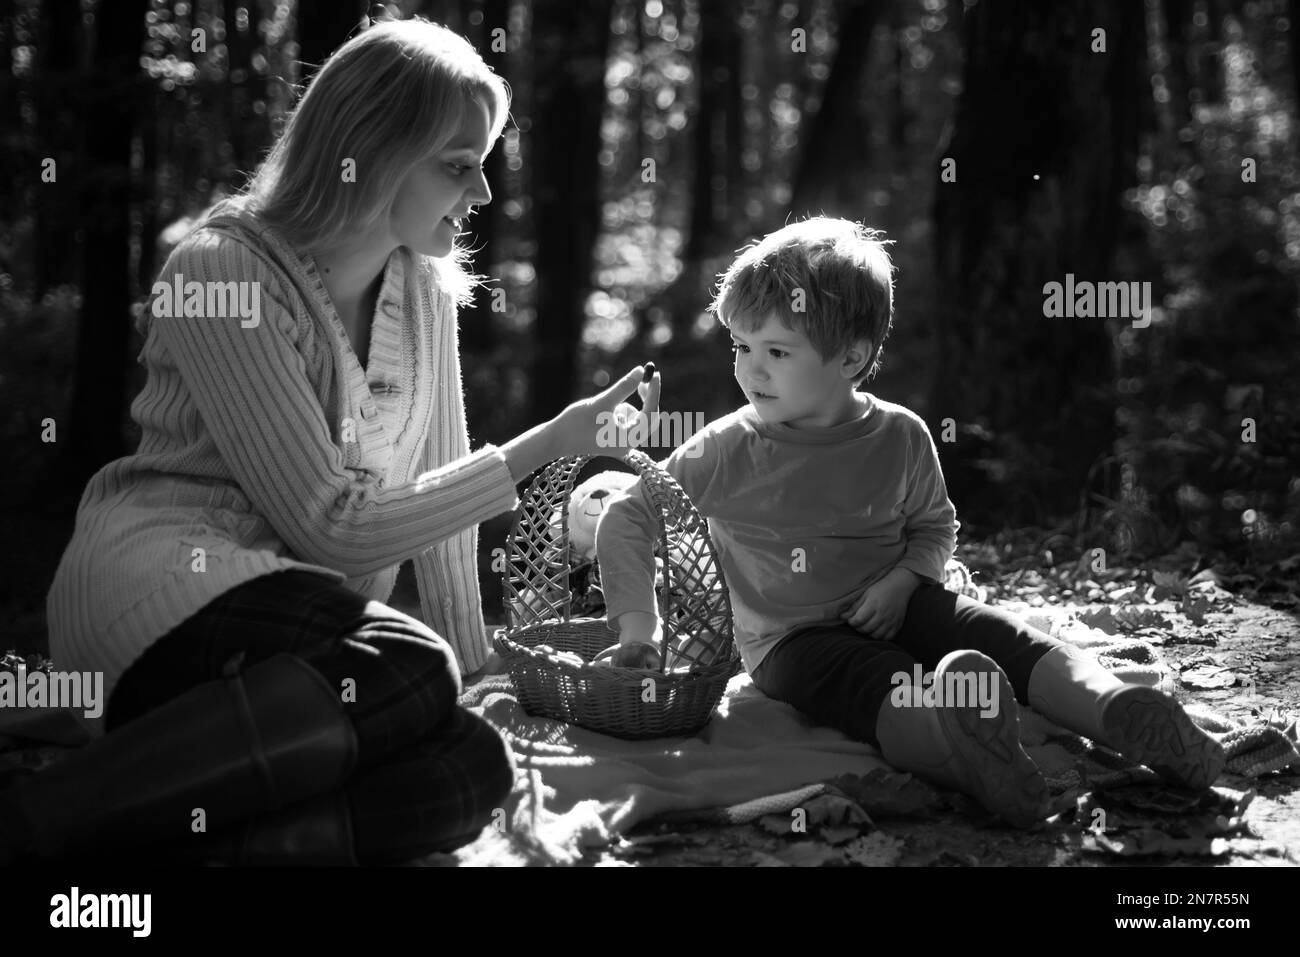 Junge Mutter, die ihrem kleinen Sohn beim Herbstpicknick eine süße Saisonberrie gibt. Mama und Kind sitzen auf der Picknickdecke und essen aus dem Picknickkorb Stockfoto